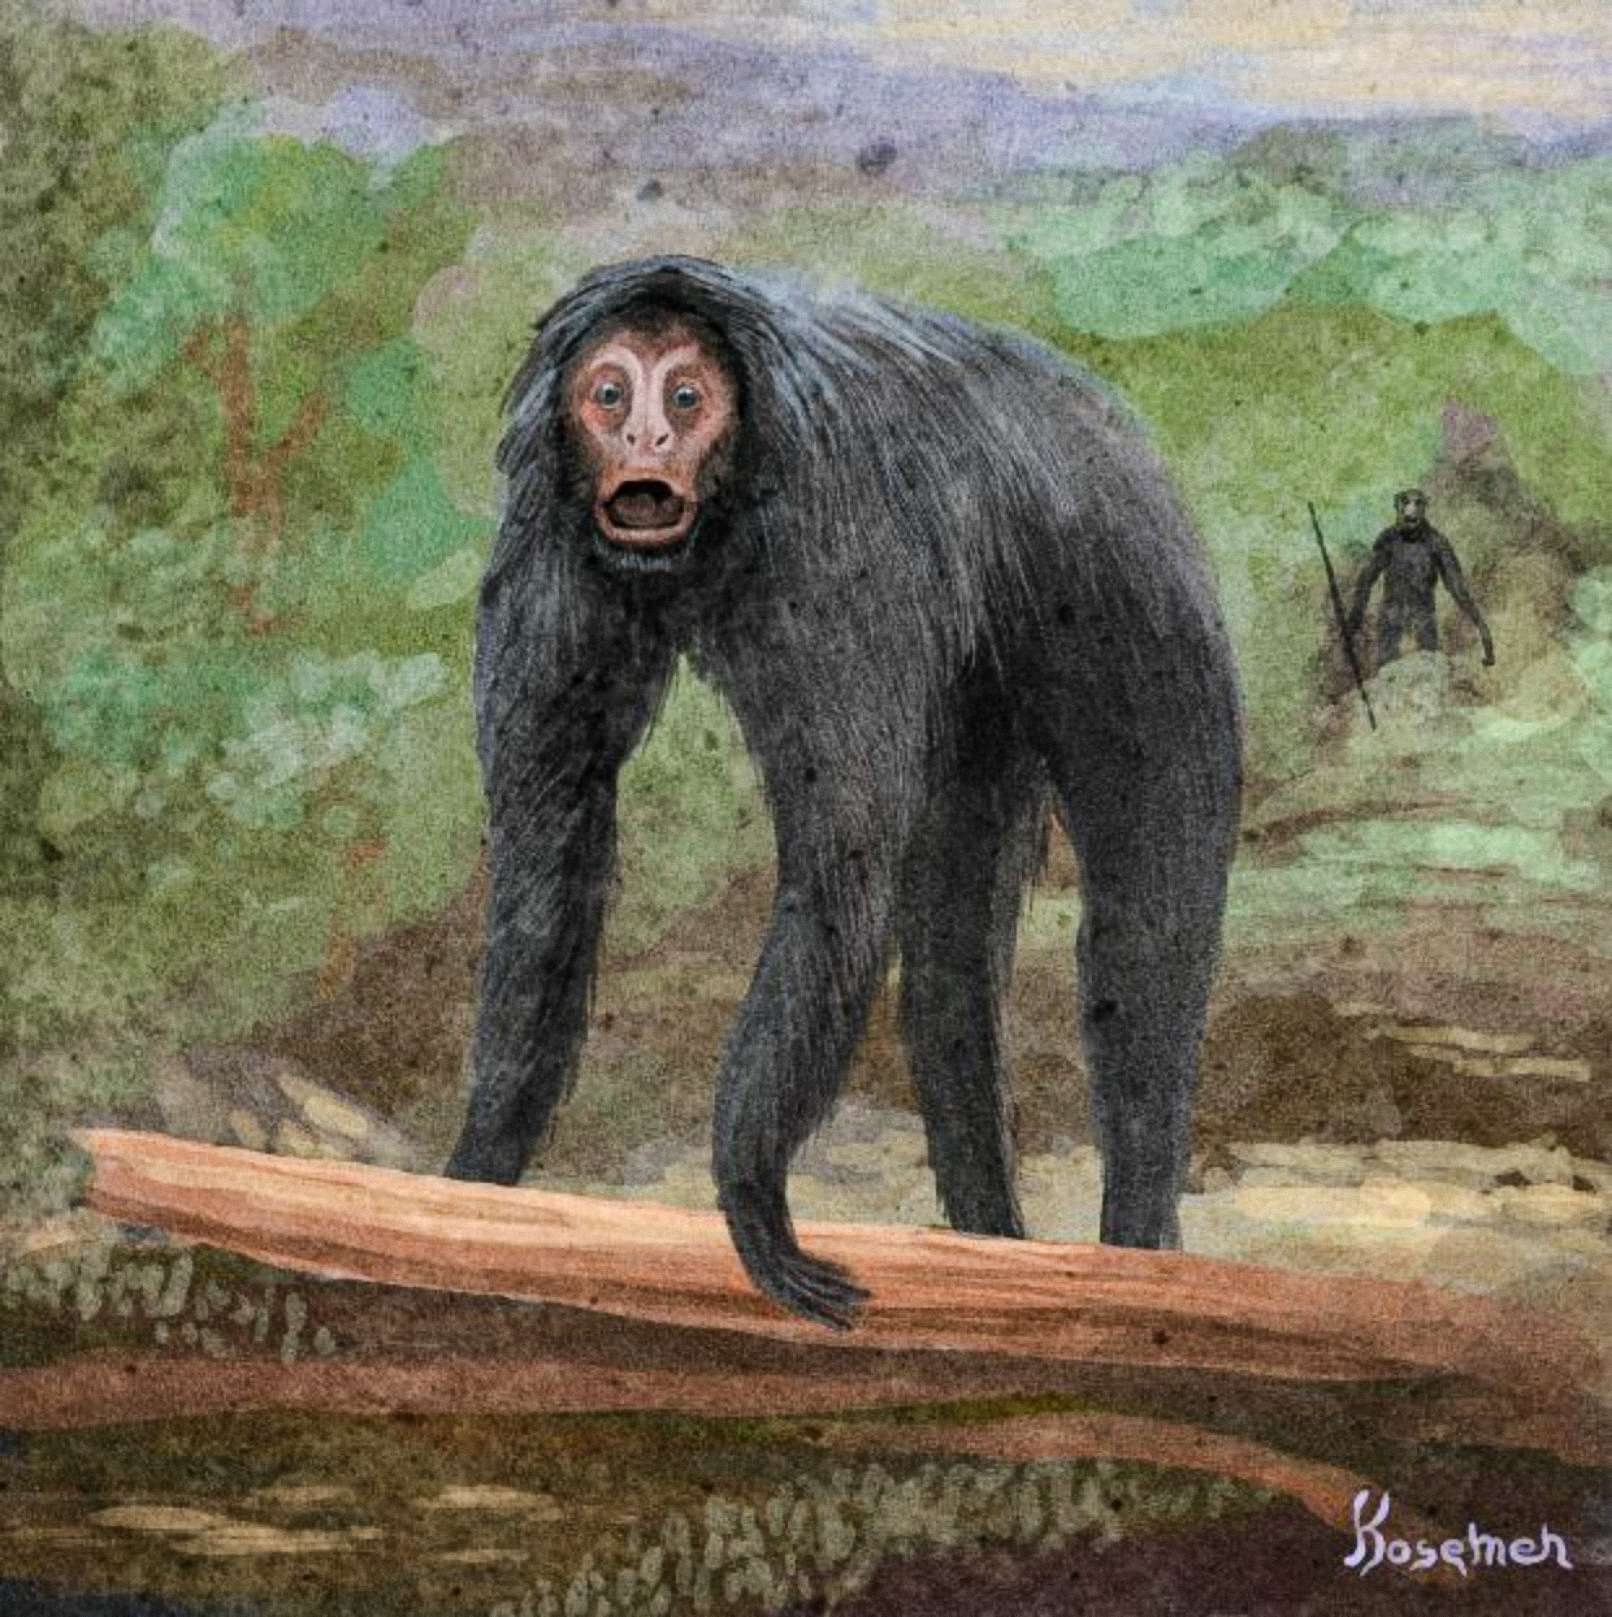 Sebuah Tafsir Spekulatif Peristiwa, primata lain digambarkan di belakang dengan memegang Alat (seni oleh Kosemen)